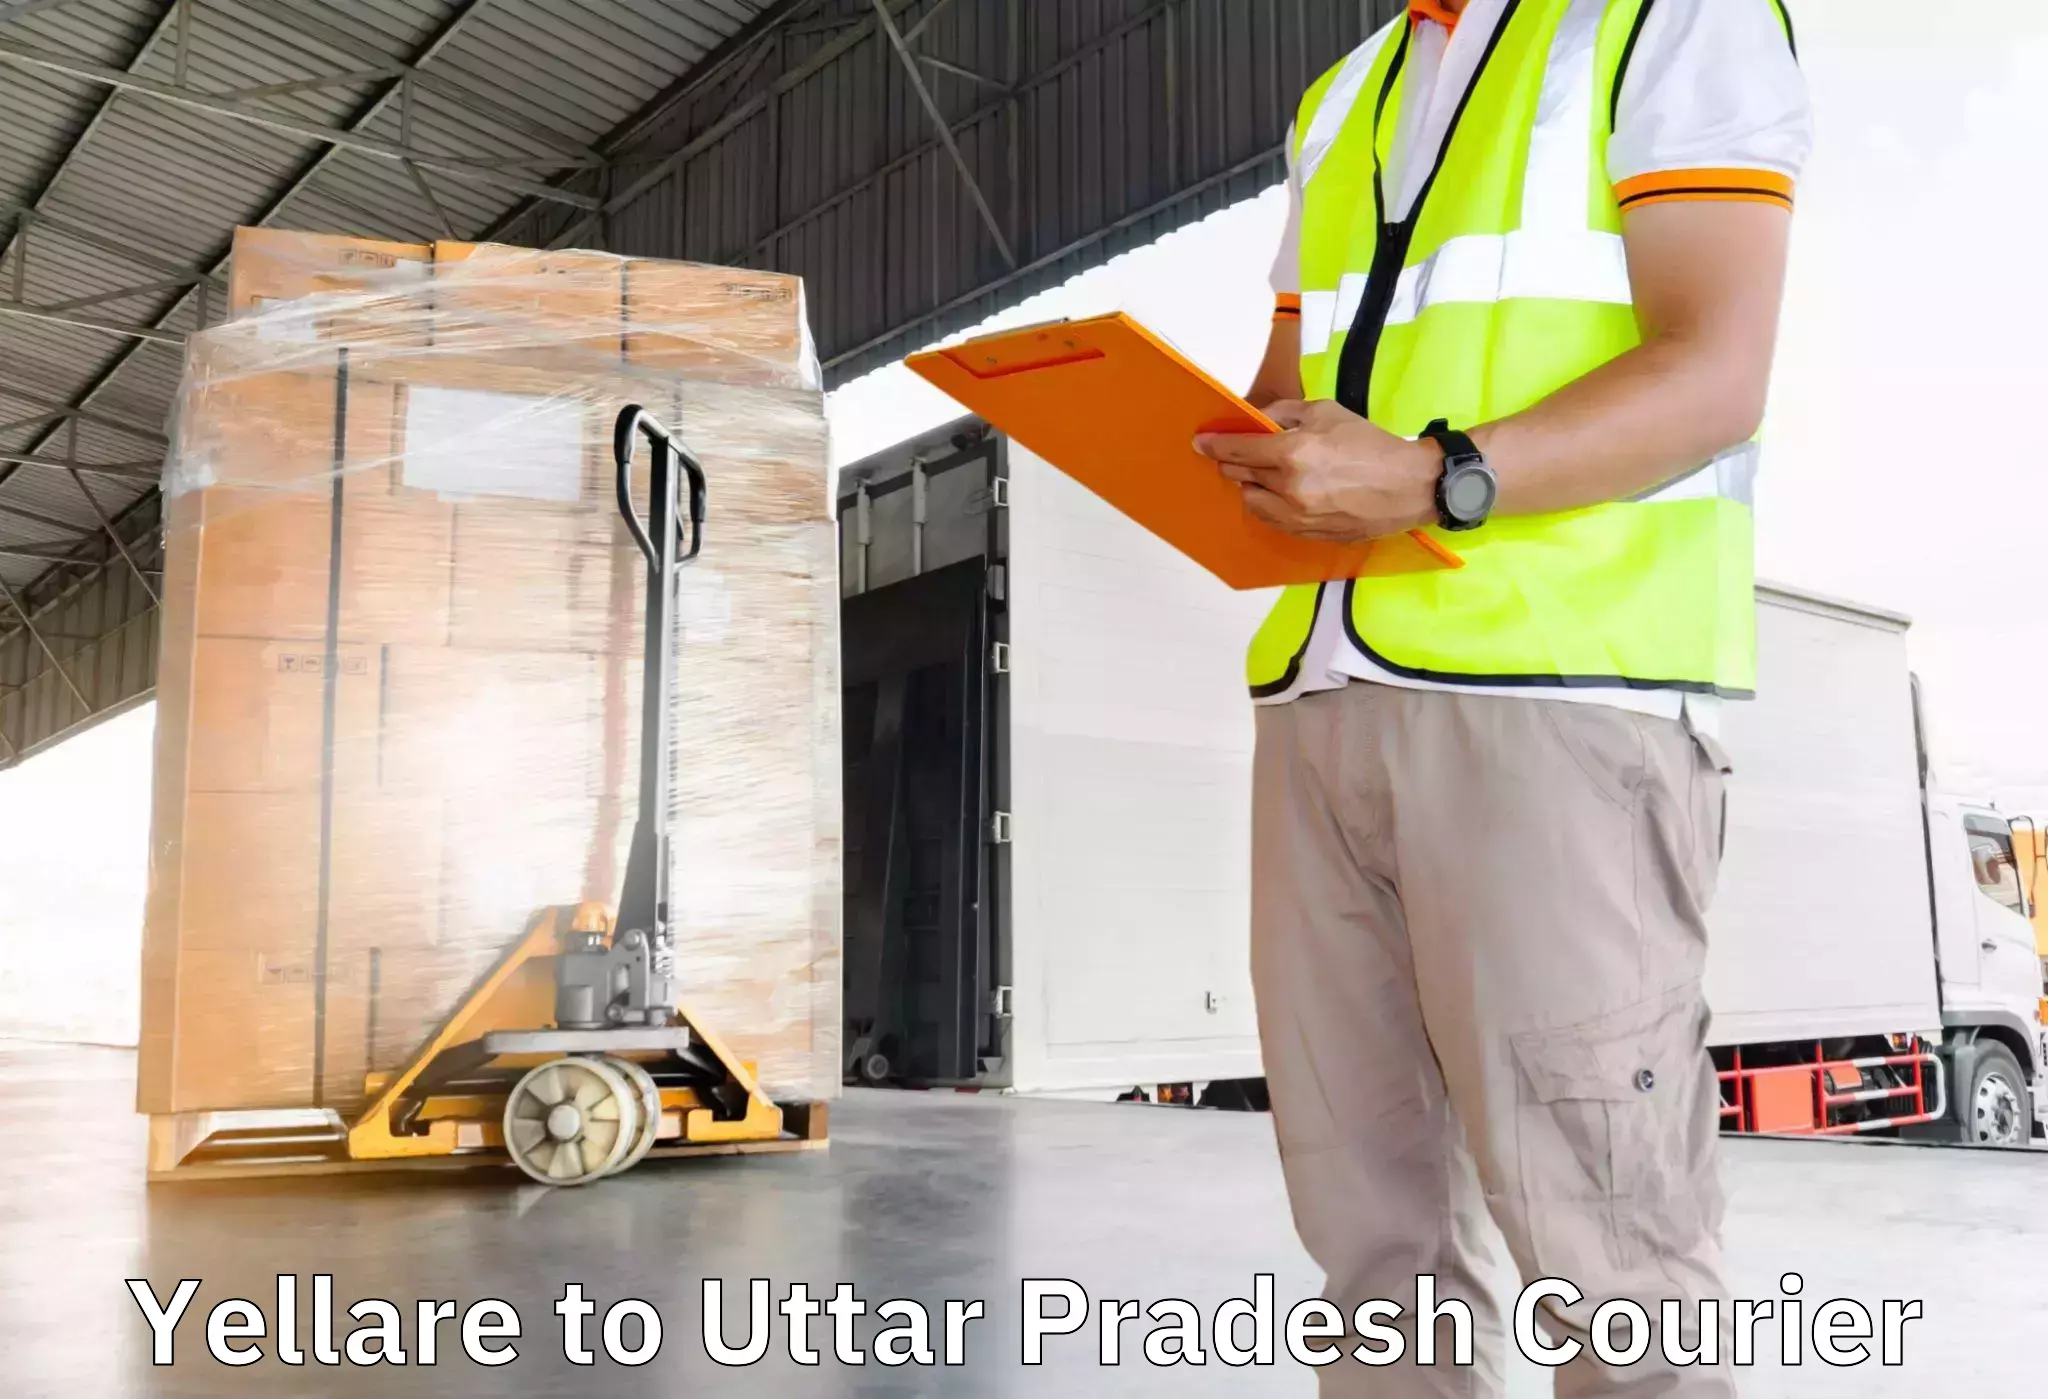 Household goods transporters Yellare to Hamirpur Uttar Pradesh